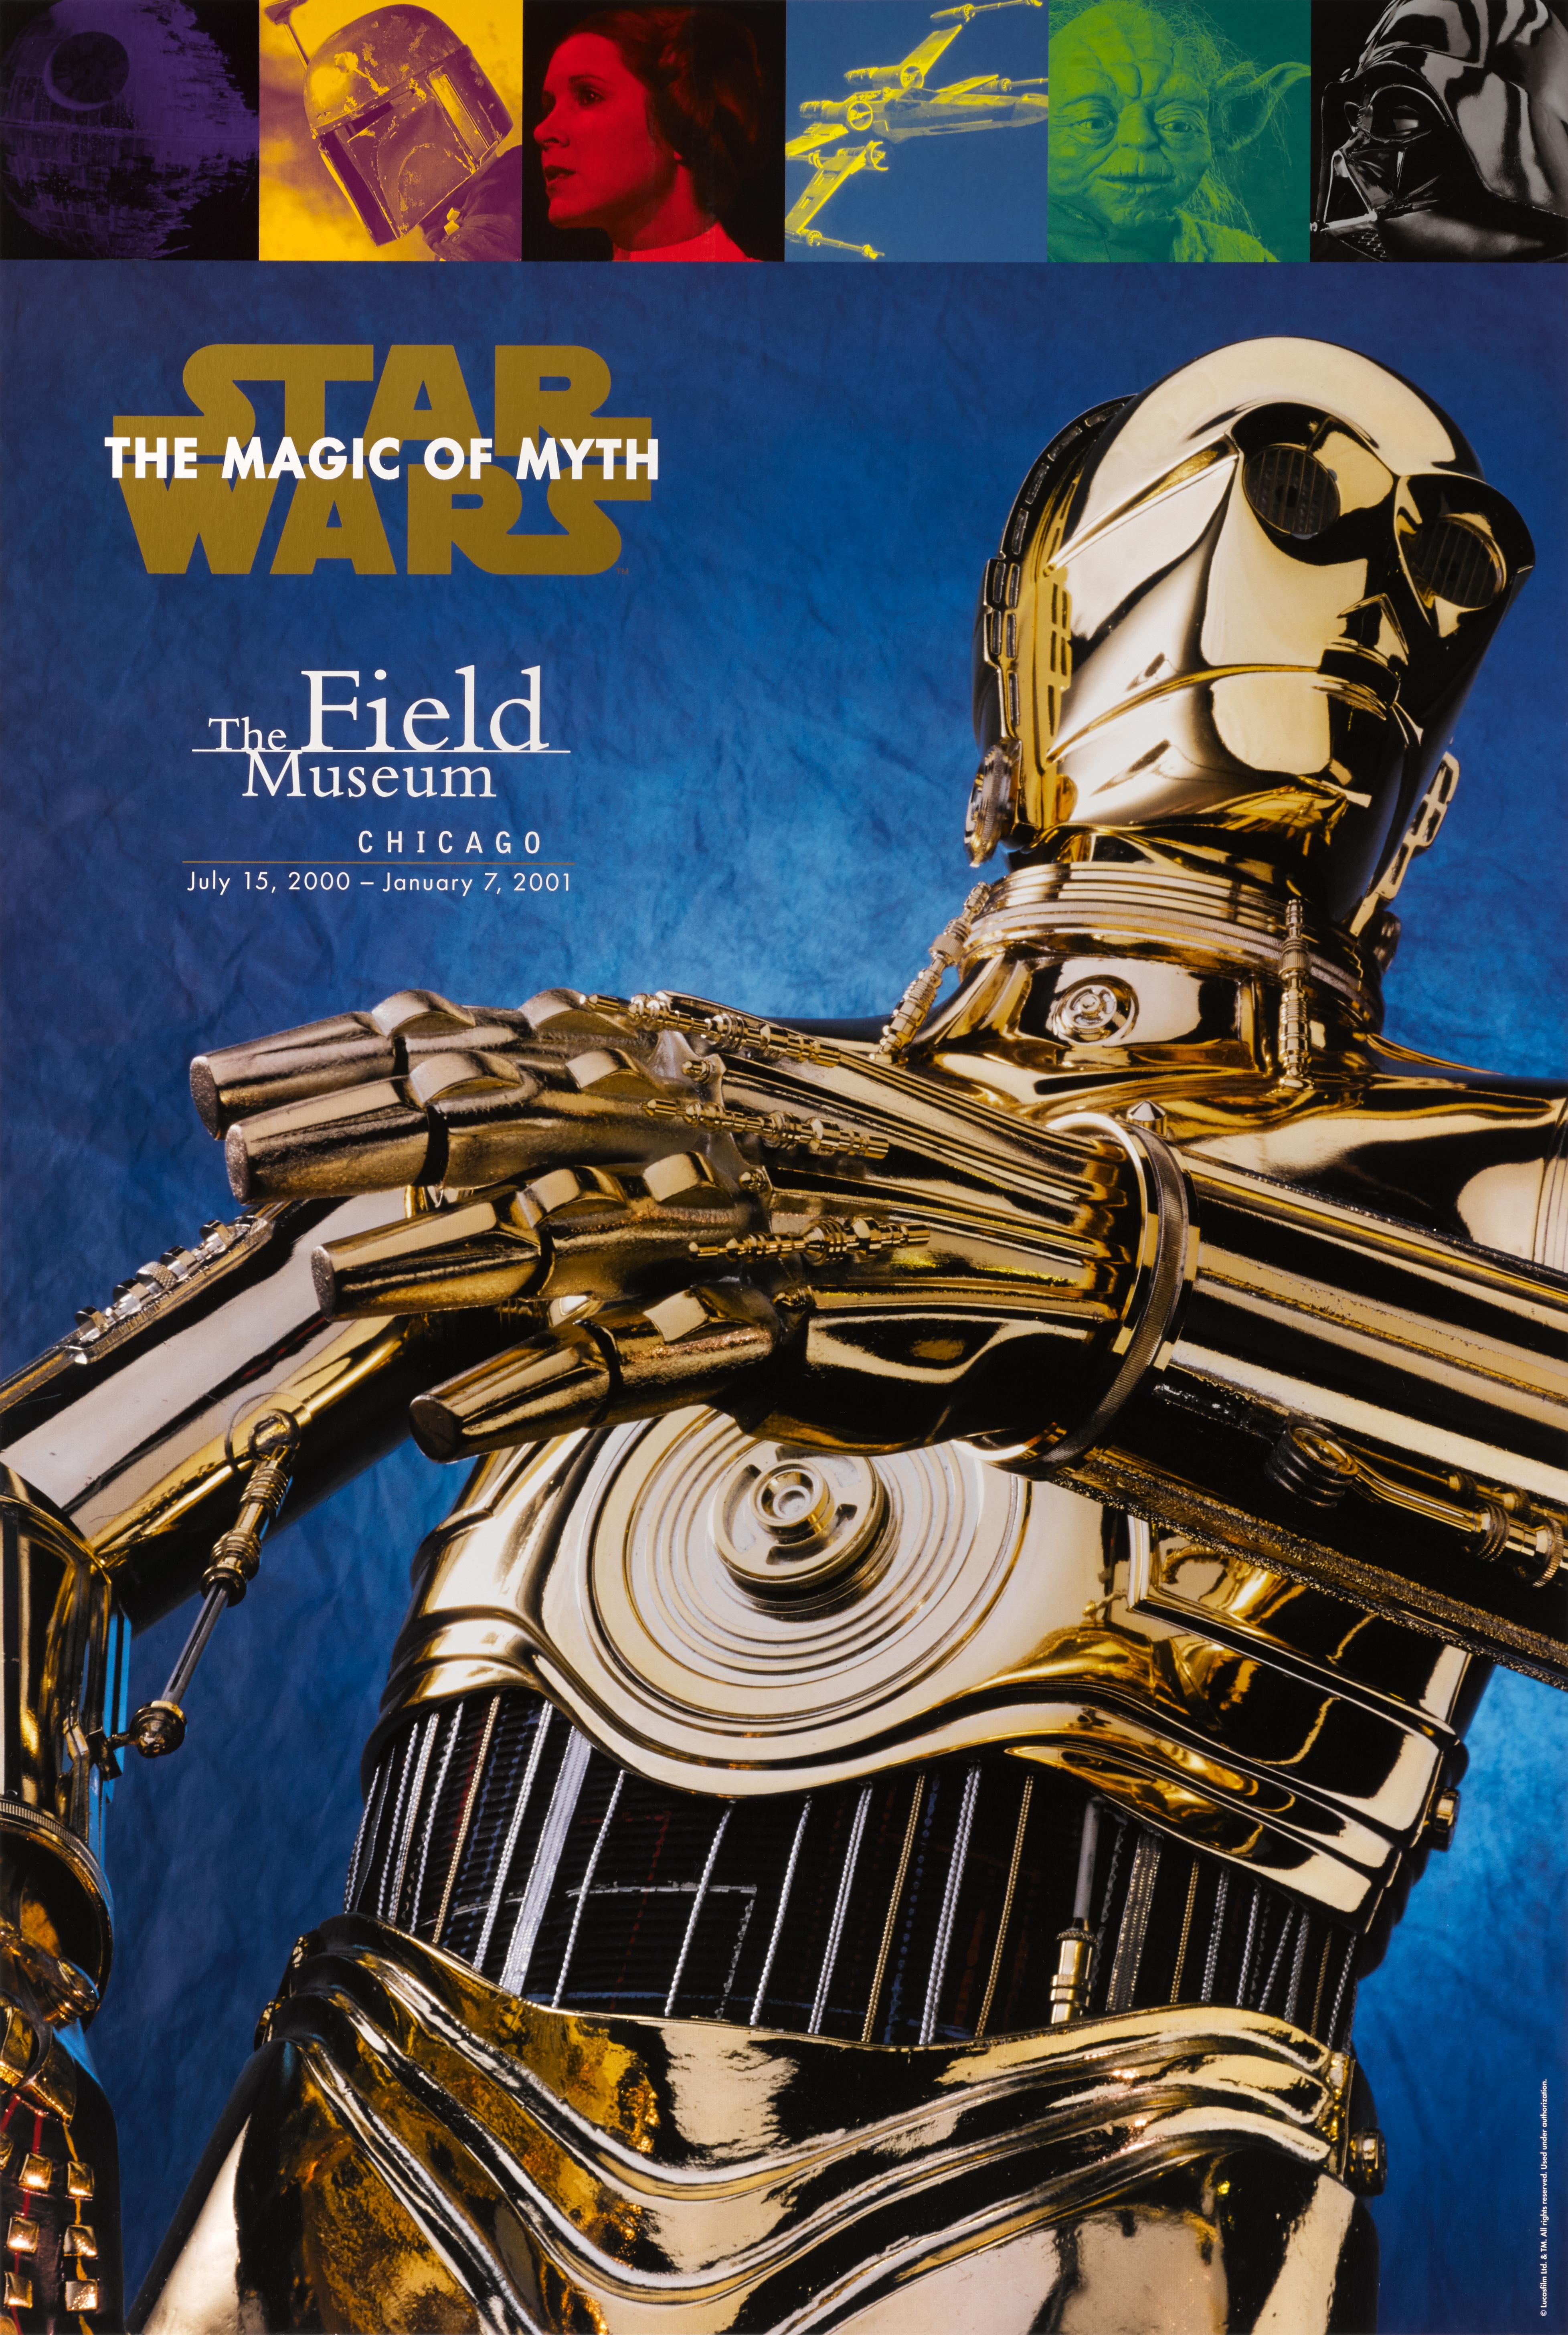 Affiche originale américaine pour une exposition intitulée Star Wars : The Magic of Myth qui s'est tenue au Field Museum de Chicago du 15 juillet 2000 au 7 janvier 2001.
Cette affiche est doublée de toile de conservation et, une fois dépliée, elle